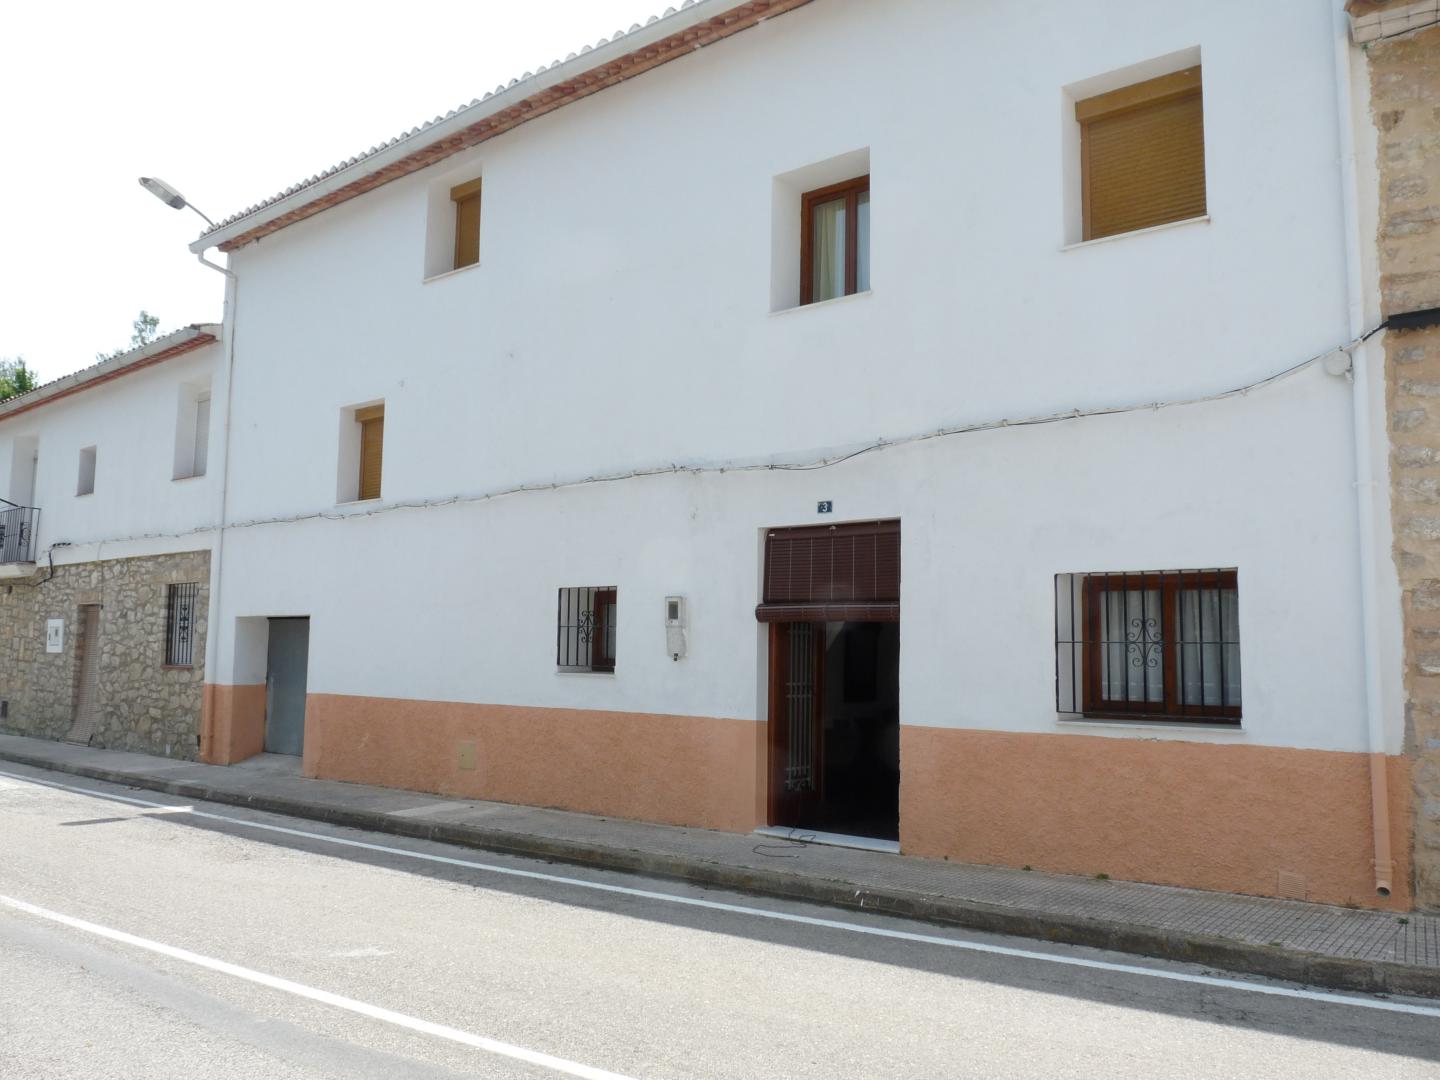 House for sale in La Carroja-Ref: 1803